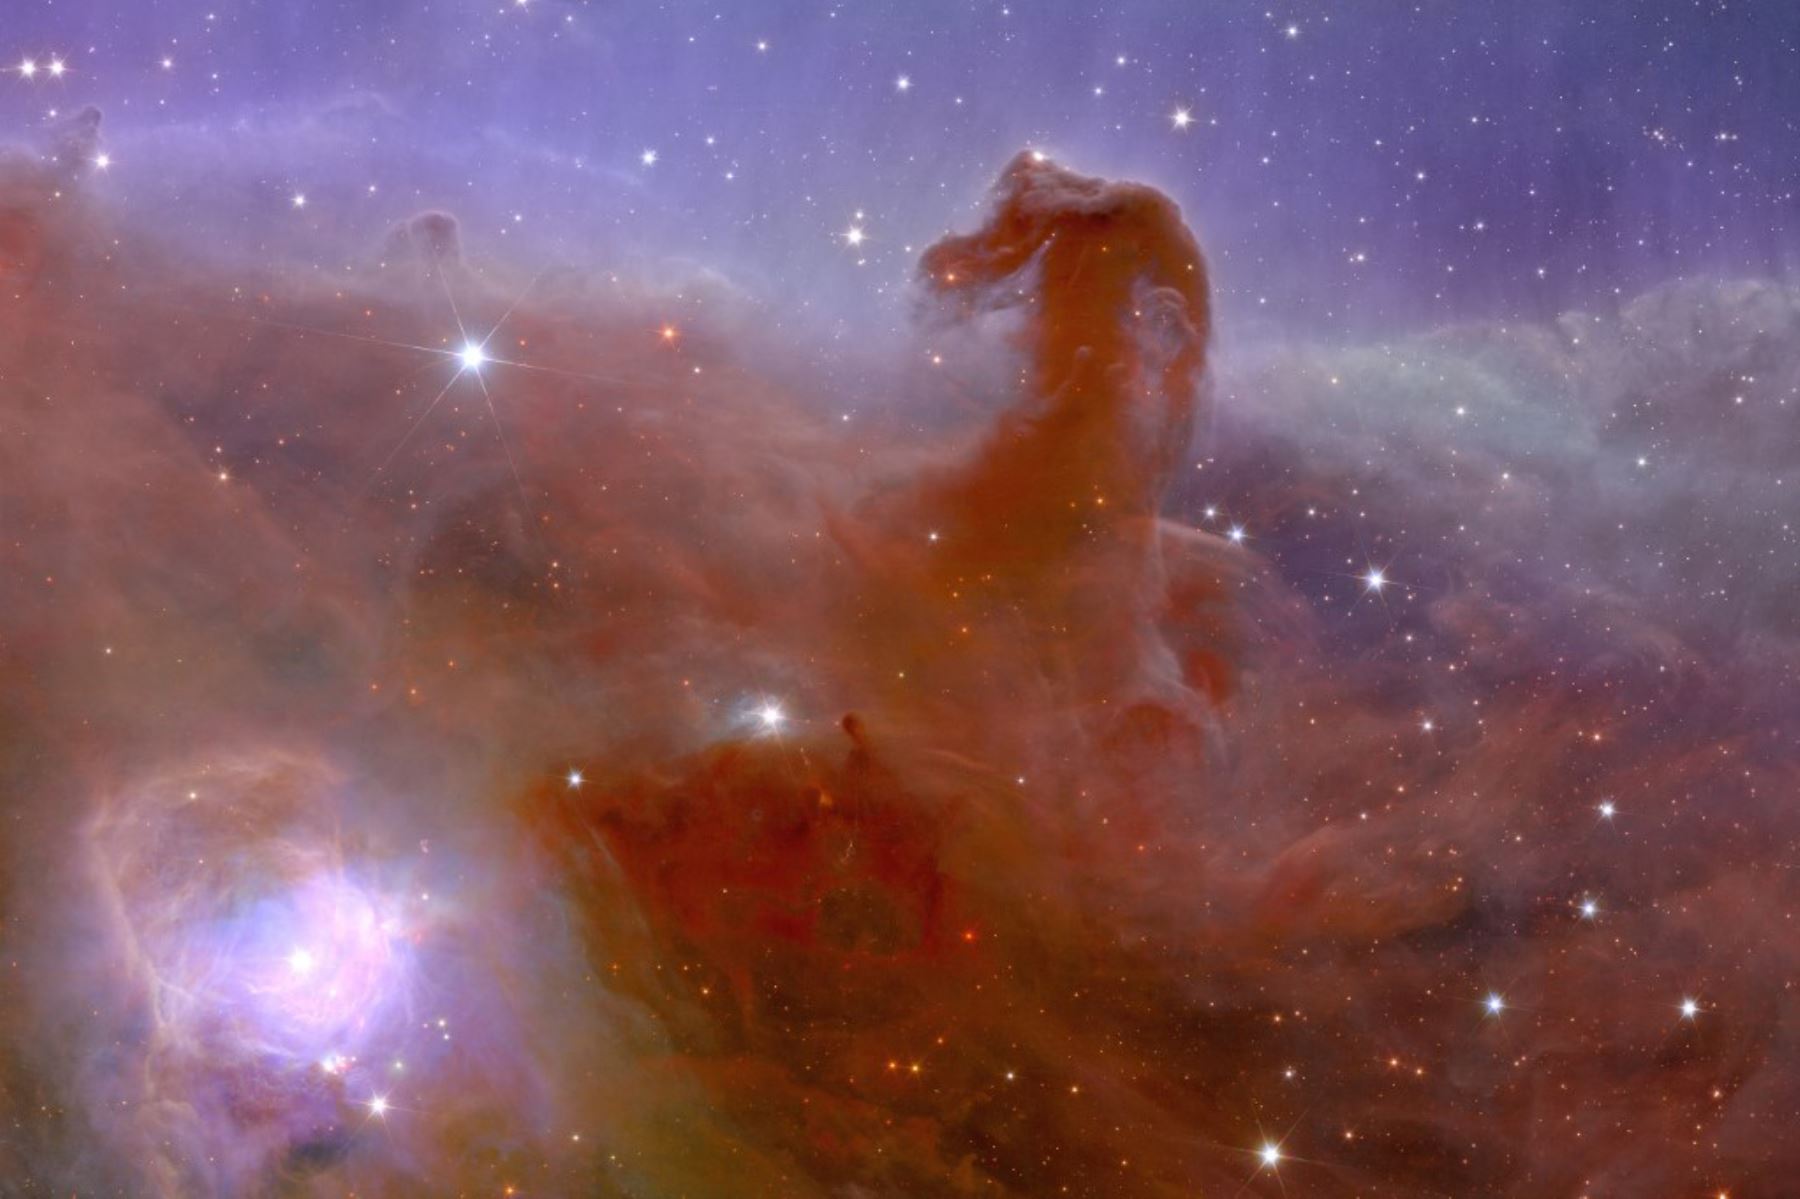 Las primeras imágenes del telescopio espacial europeo Euclid se publicaron el 7 de noviembre y muestran una nebulosa que se asemeja a la cabeza de un caballo, galaxias distantes nunca antes vistas e incluso "evidencia circunstancial" de materia oscura esquiva. Foto: AFP